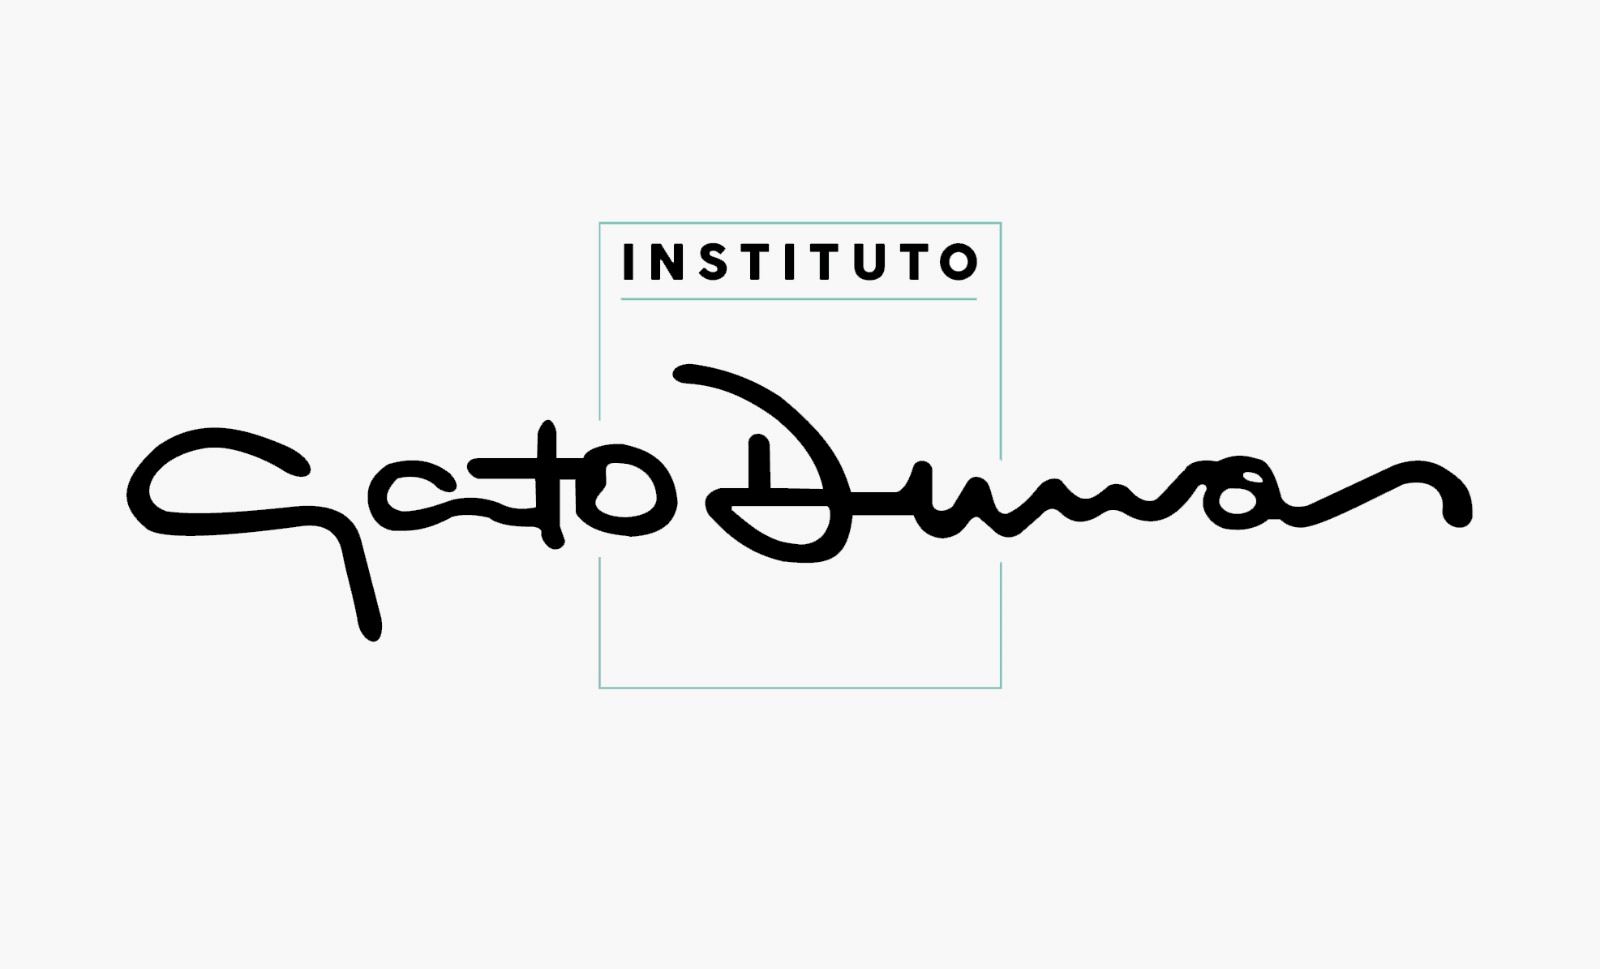 Instituto Gato Dumas